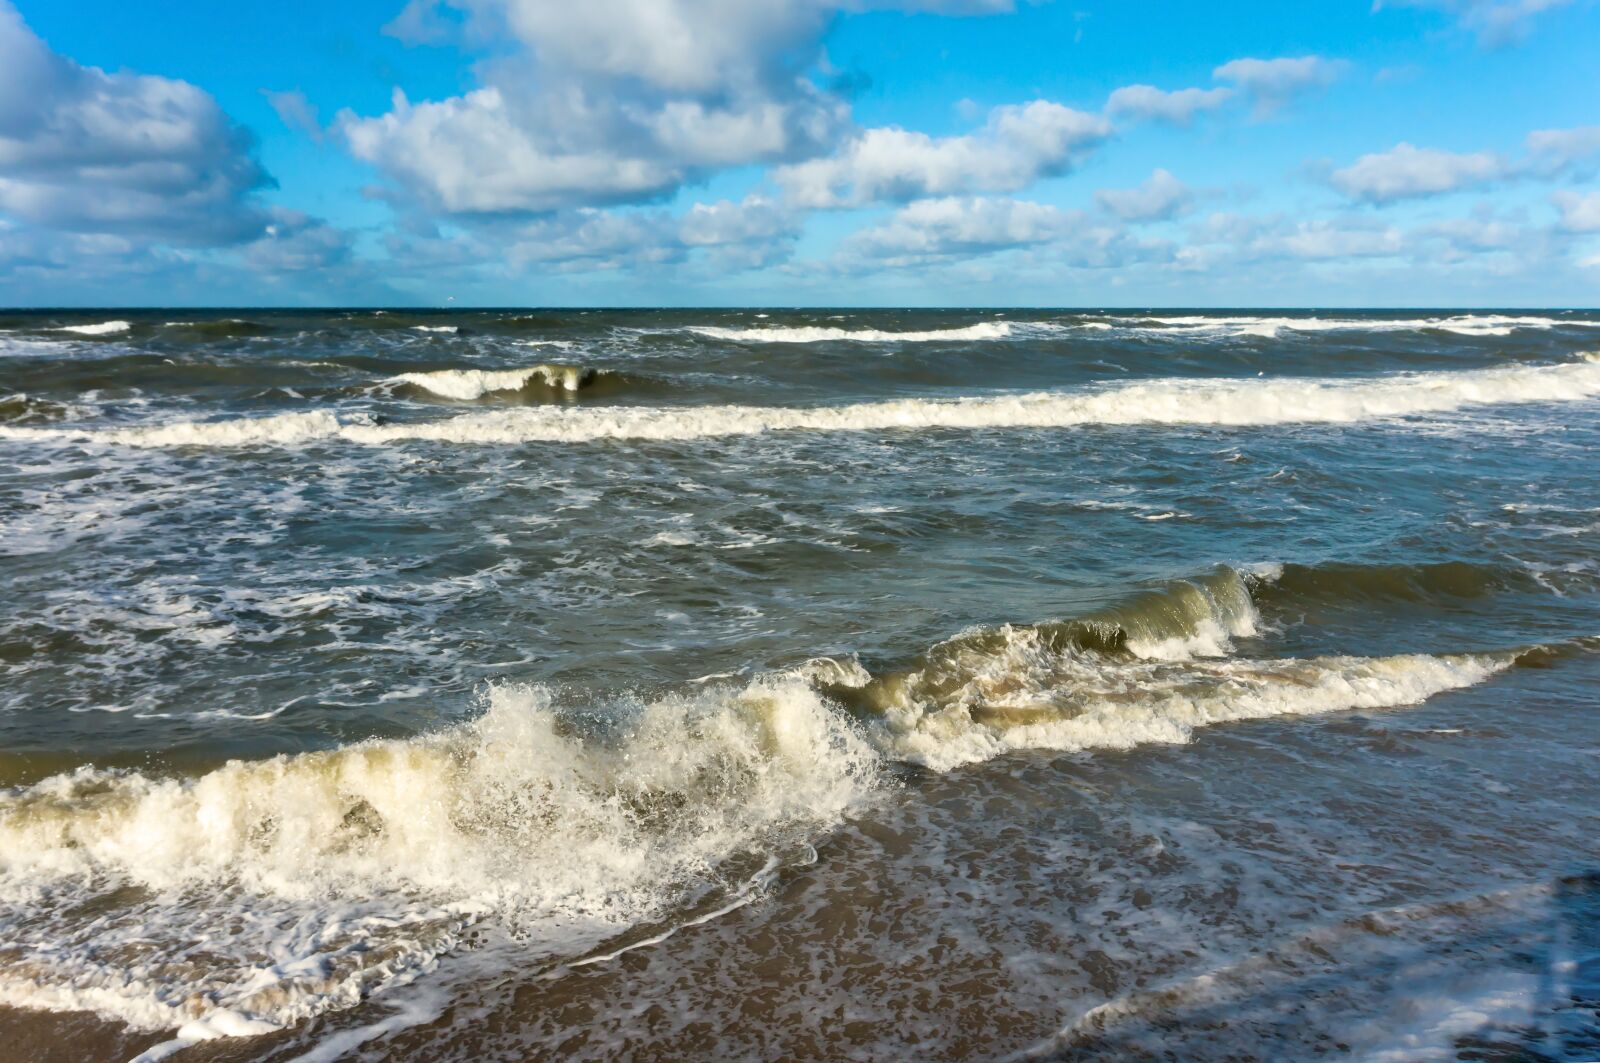 Sony Alpha NEX-3N sample photo. Storm, sea, ocean photography